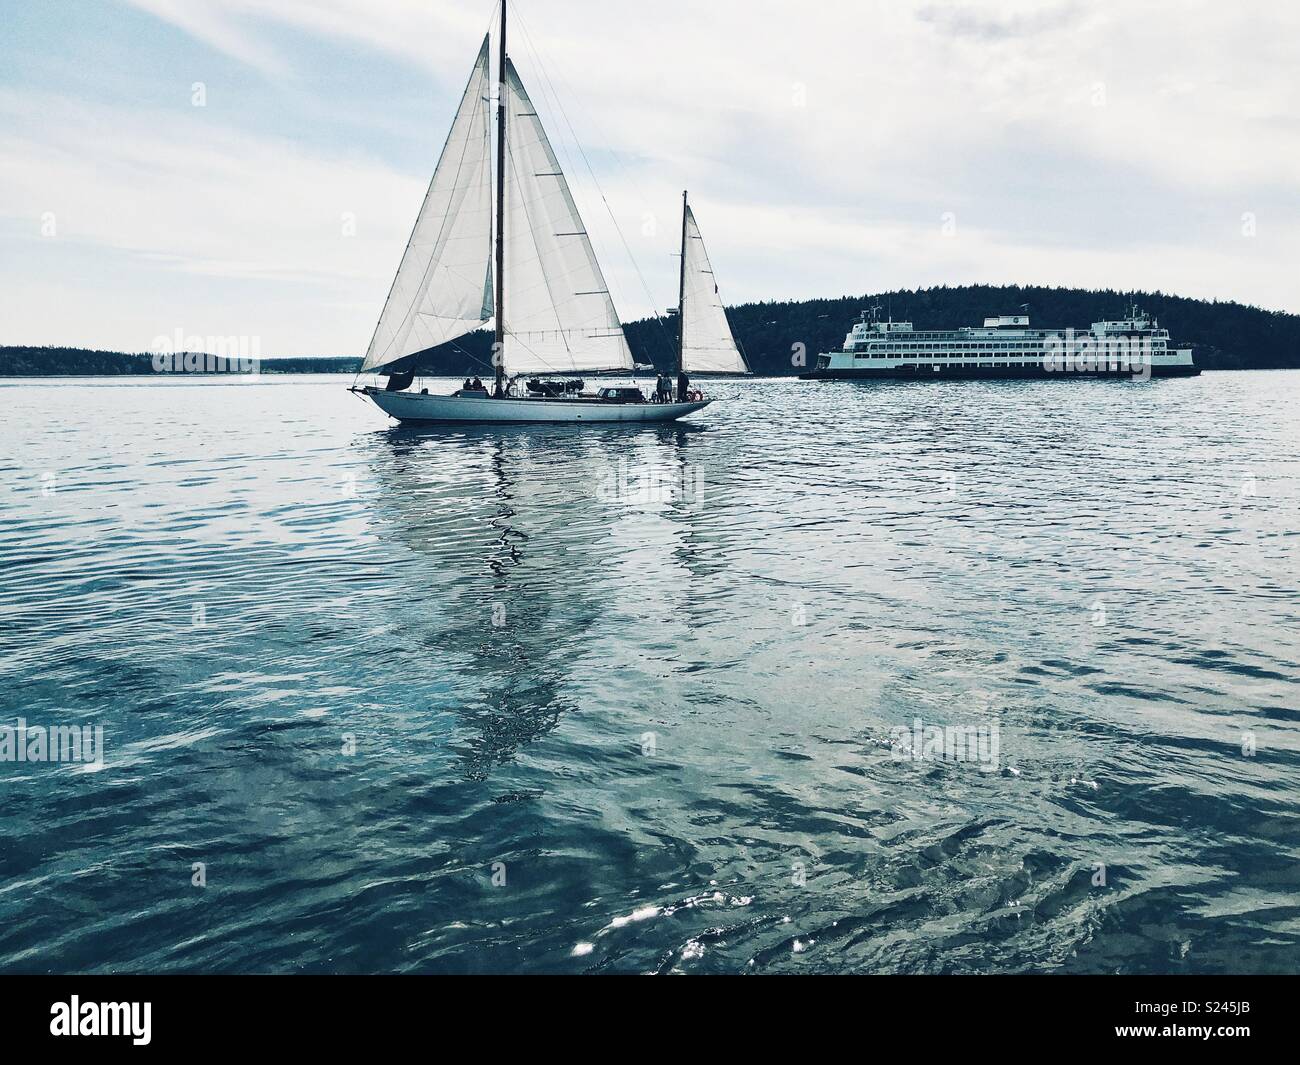 Classic Pacific Northwest scena - barca a vela e un traghetto su acqua in San Juan Islands Foto Stock